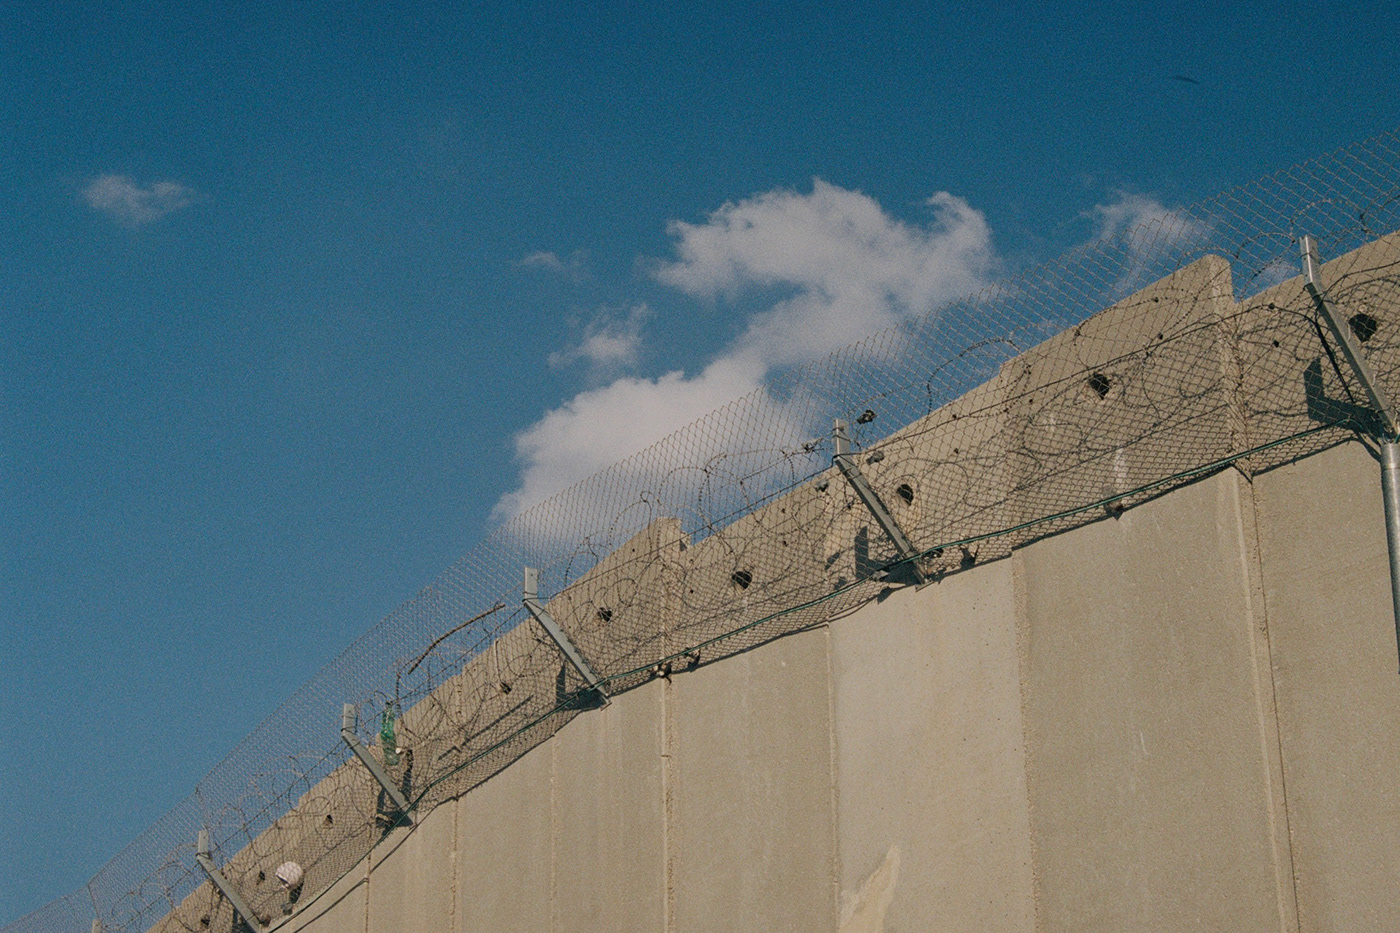 israel palestine jerusalem telaviv  bethlehem 35mm analog film photography kodak analog photography